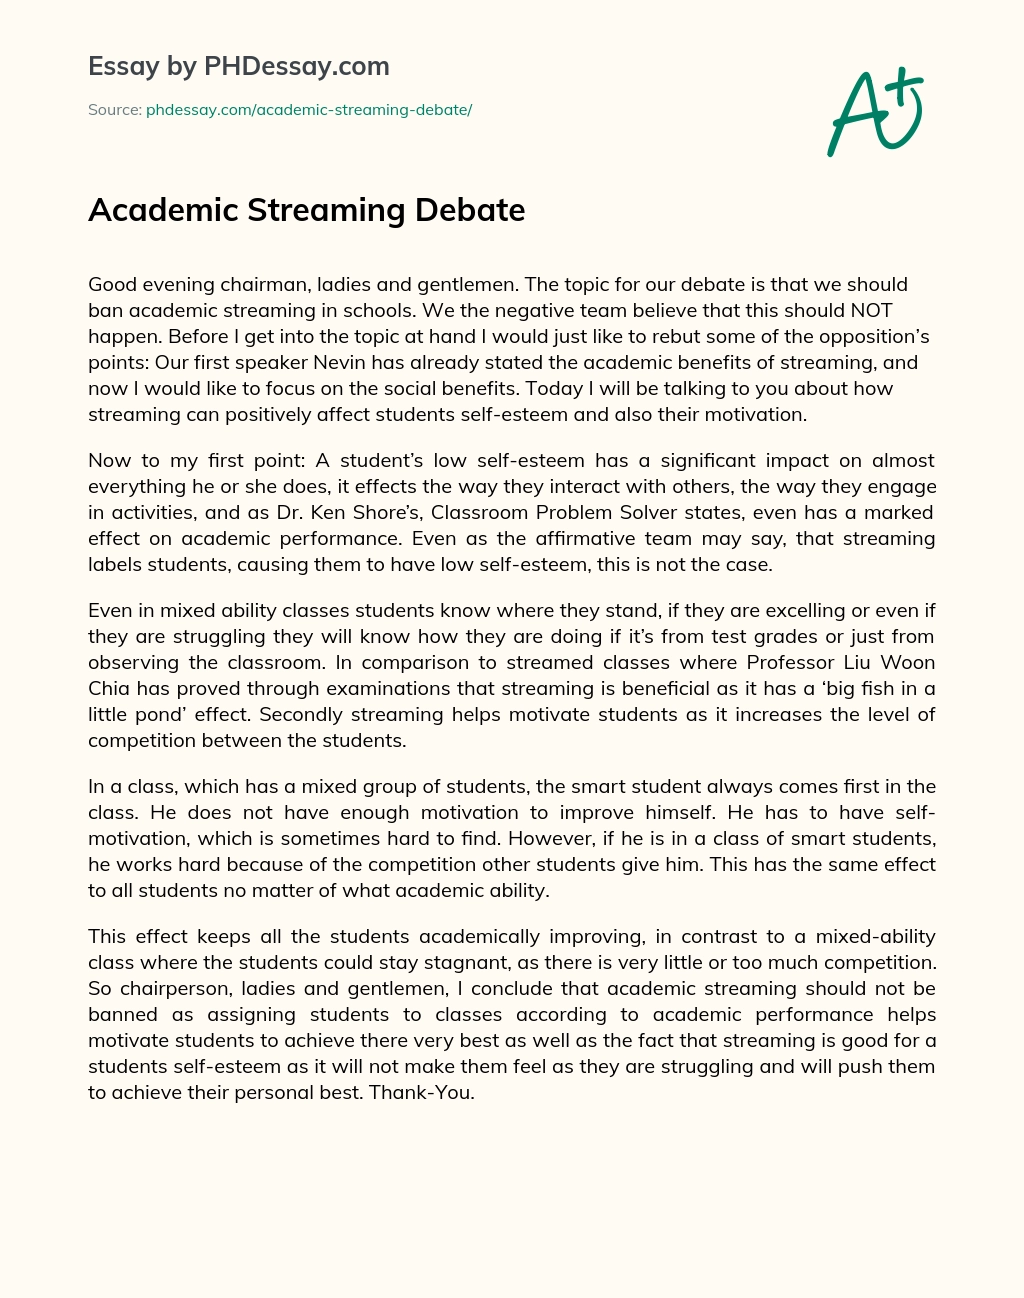 Academic Streaming Debate essay